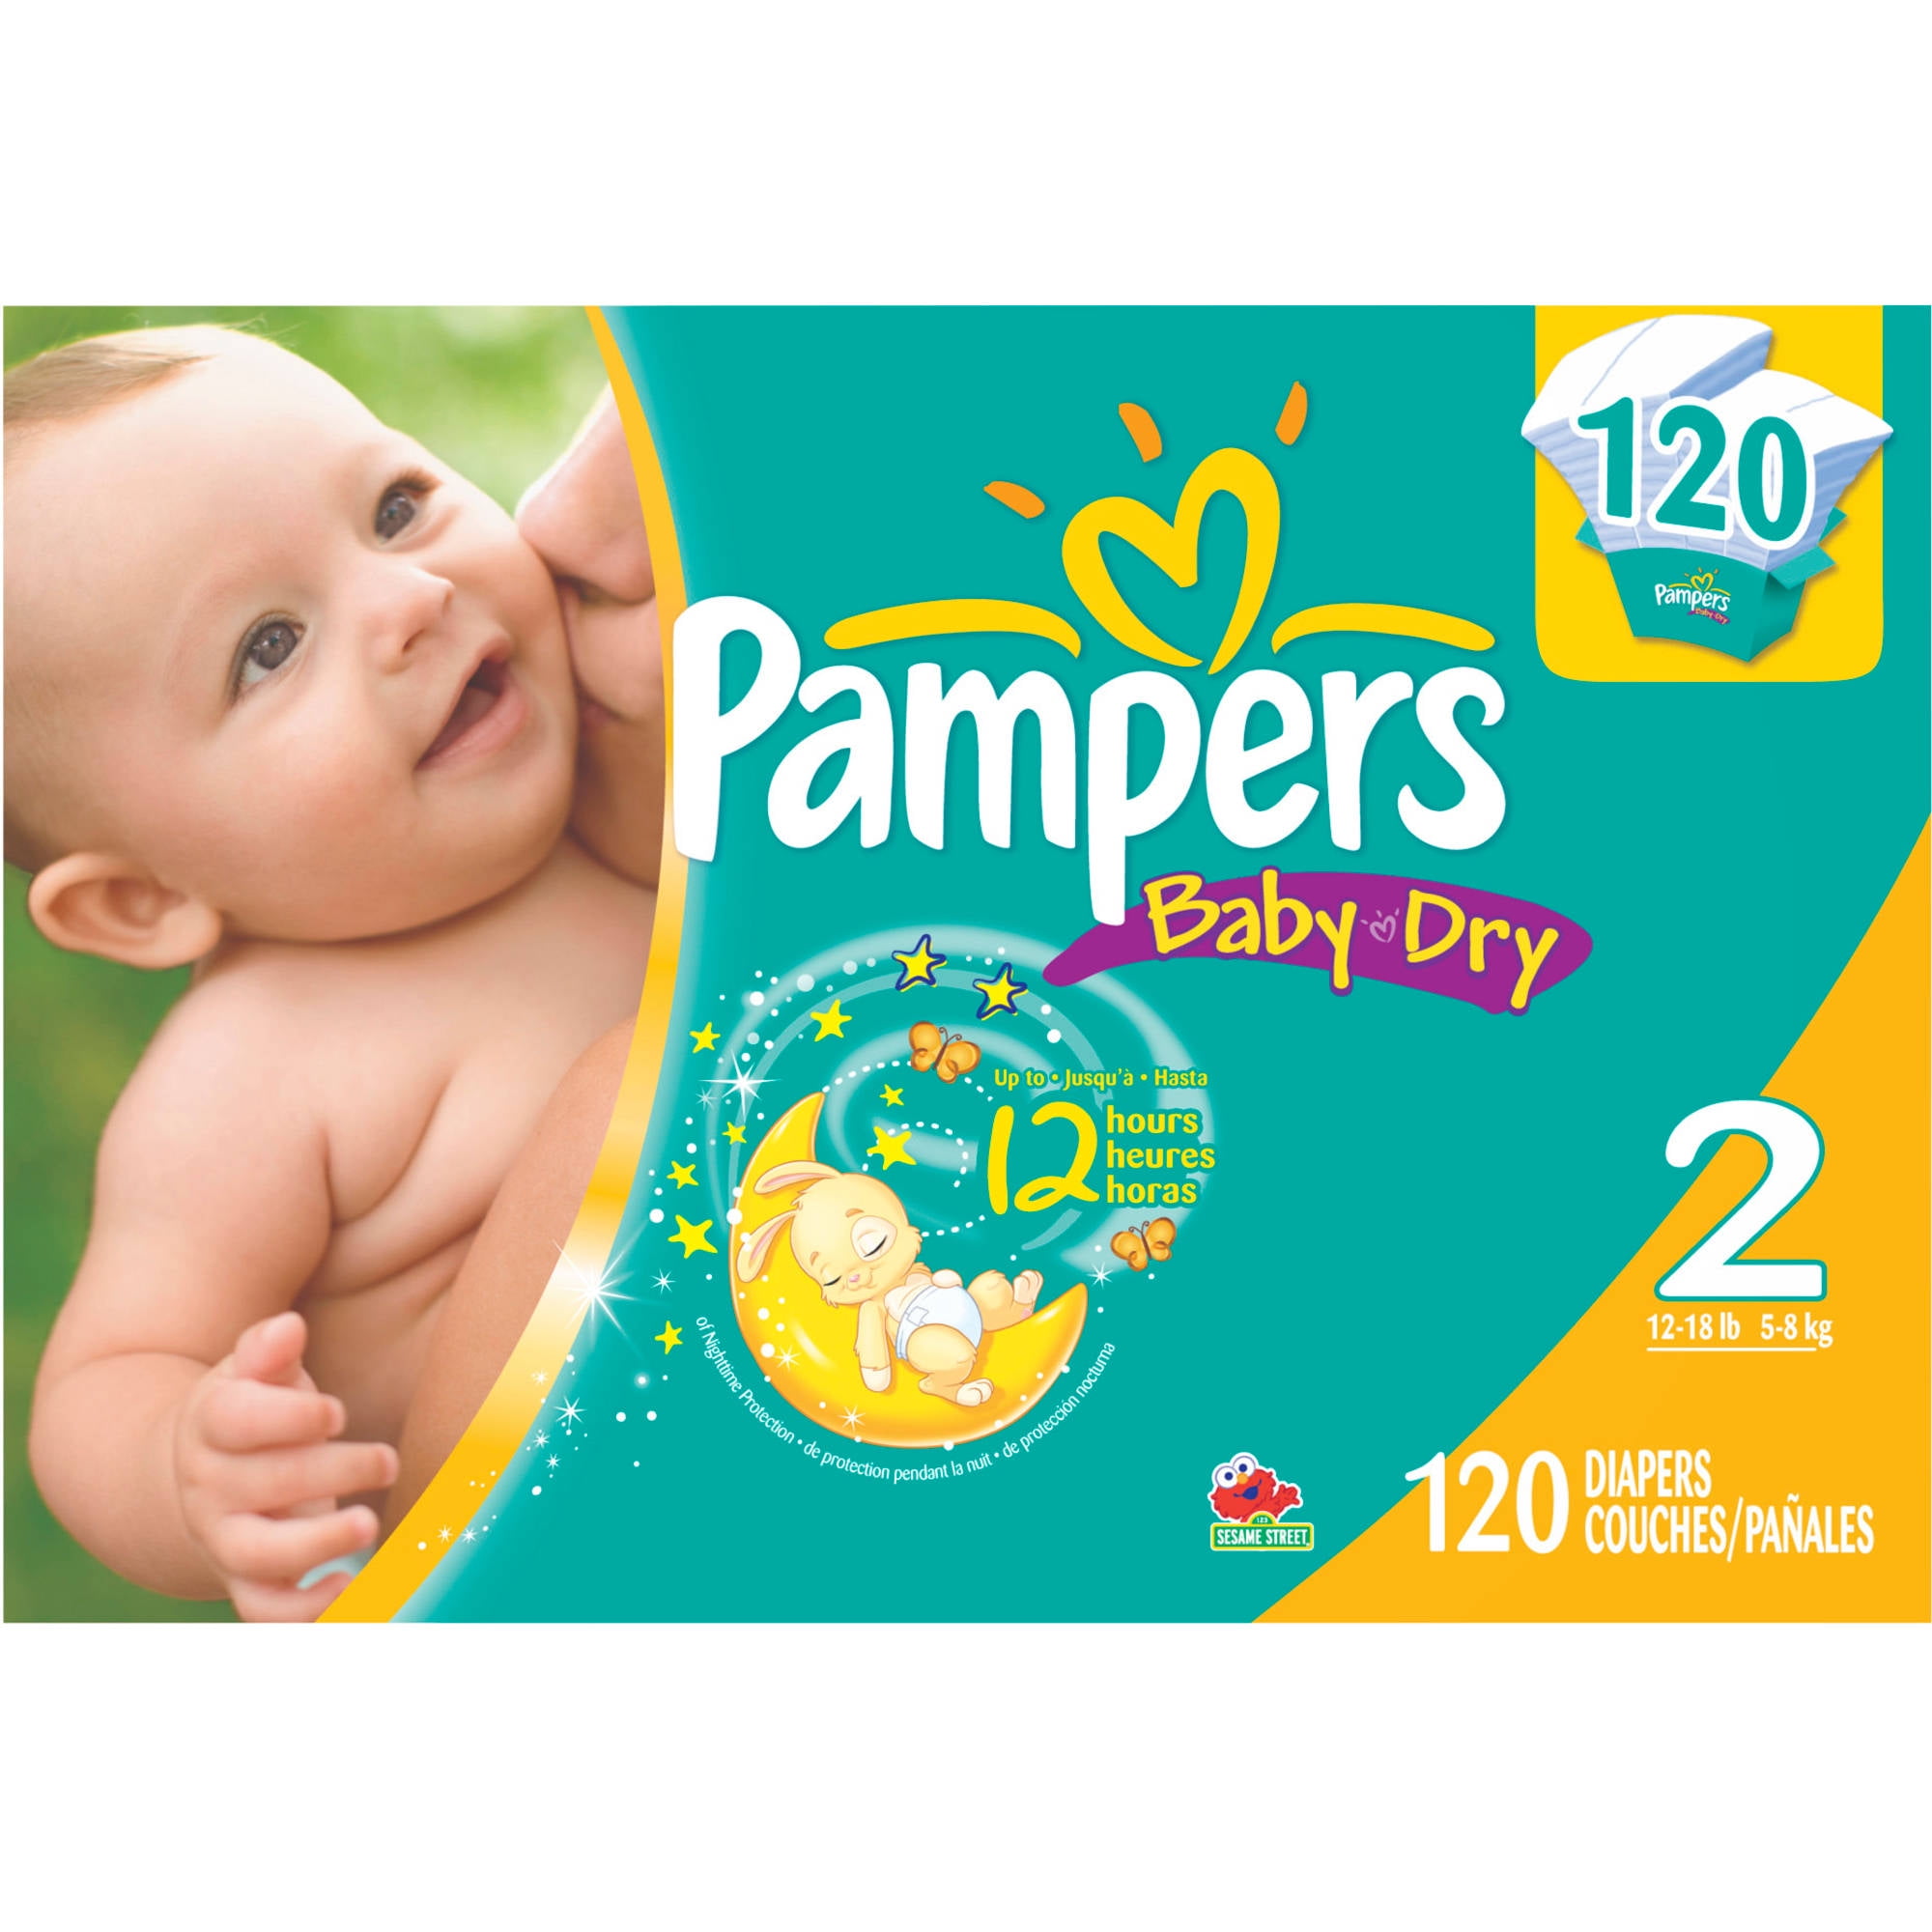 middernacht binnenkort Factureerbaar Pampers - Baby Dry Diapers, Super Pack (Choose Your Size) - Walmart.com